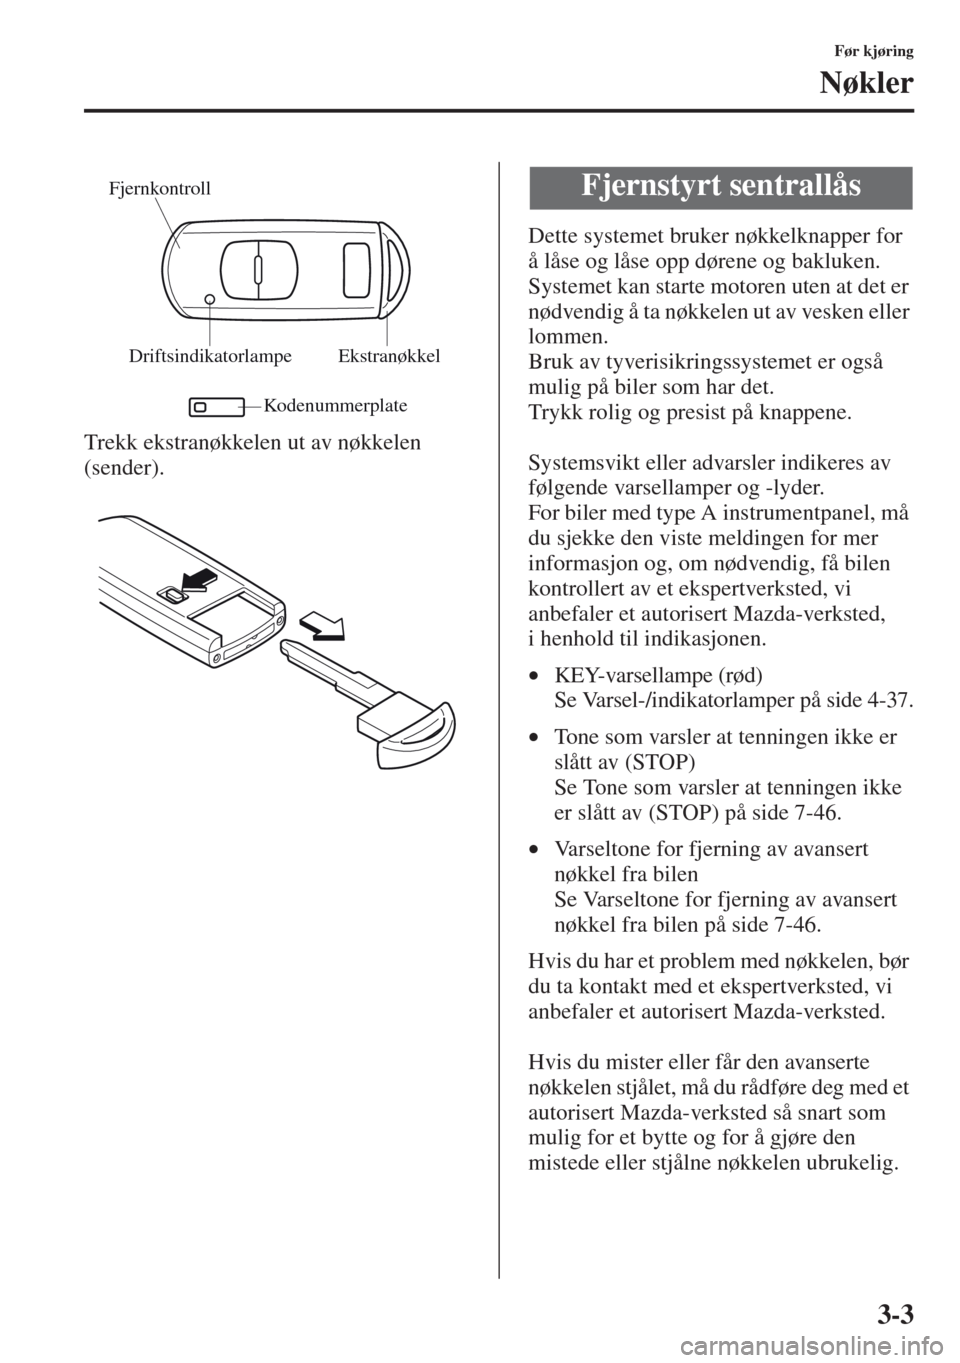 MAZDA MODEL CX-5 2013  Brukerhåndbok (in Norwegian) 3-3
Før kjøring
Nøkler
Trekk ekstranøkkelen ut av nøkkelen 
(sender).Dette systemet bruker nøkkelknapper for 
å låse og låse opp dørene og bakluken.
Systemet kan starte motoren uten at det e